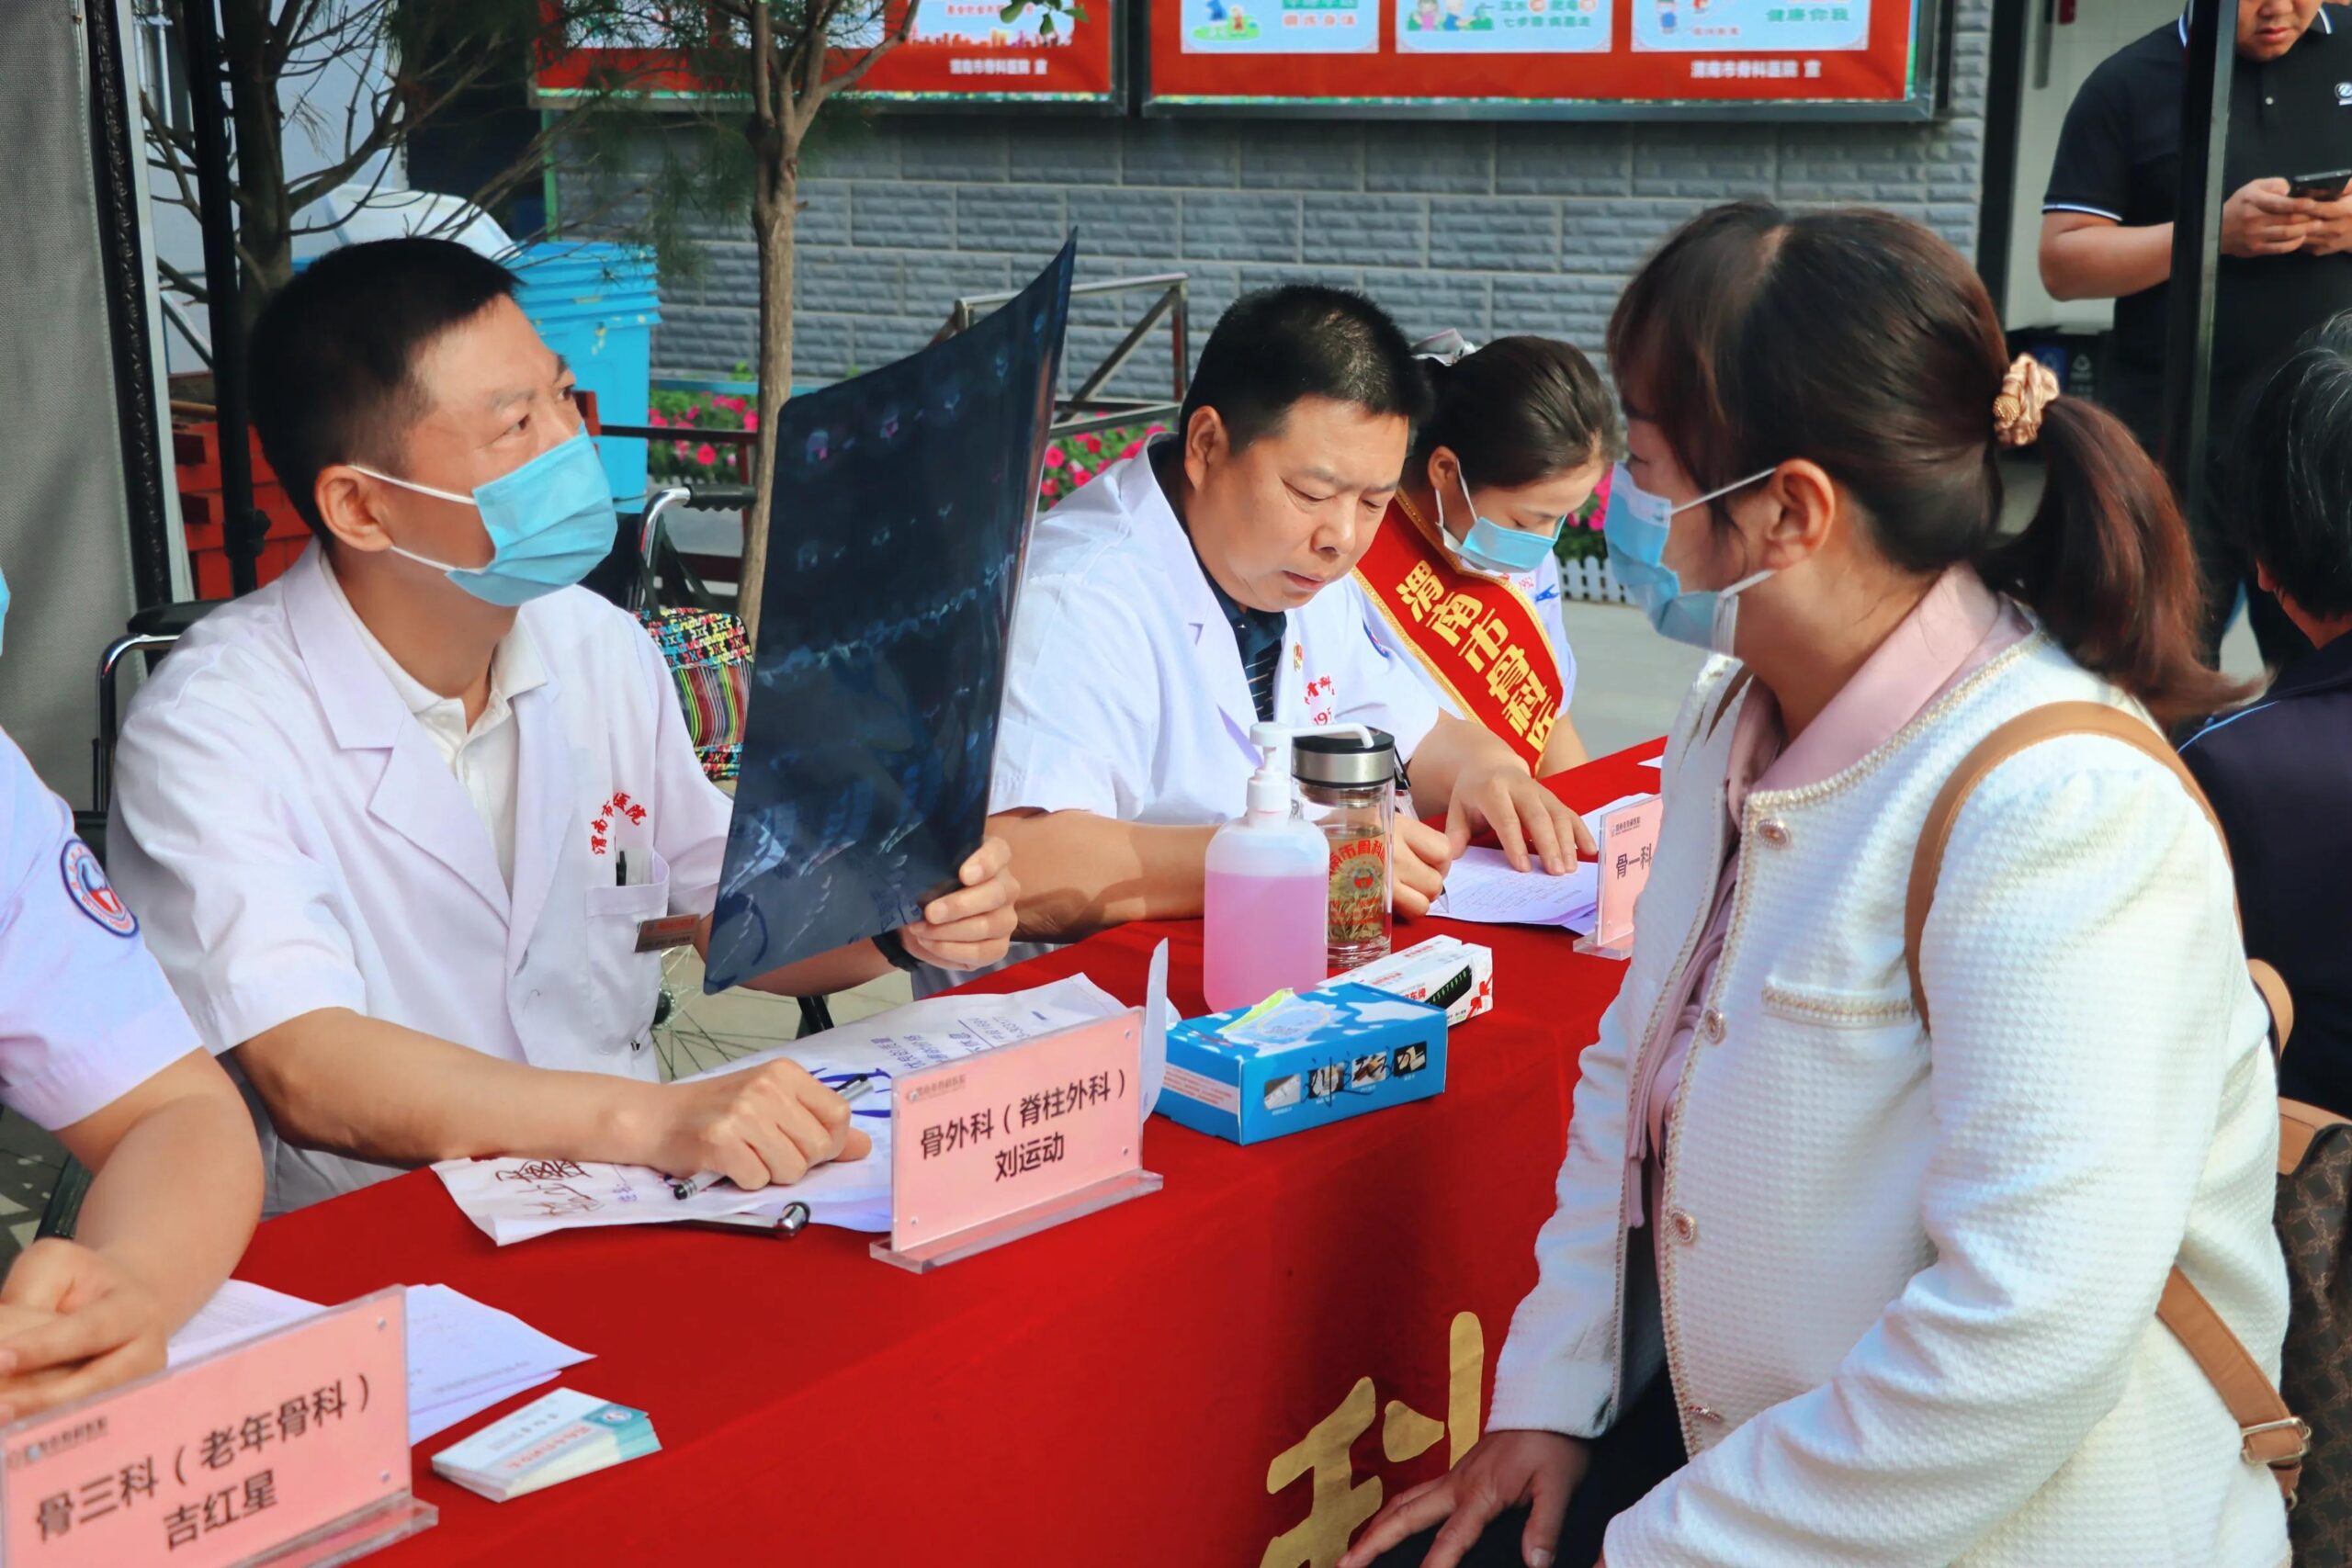 渭南市骨科医院成功举办全国助残日、全国保膝日、世界脊柱日义诊活动